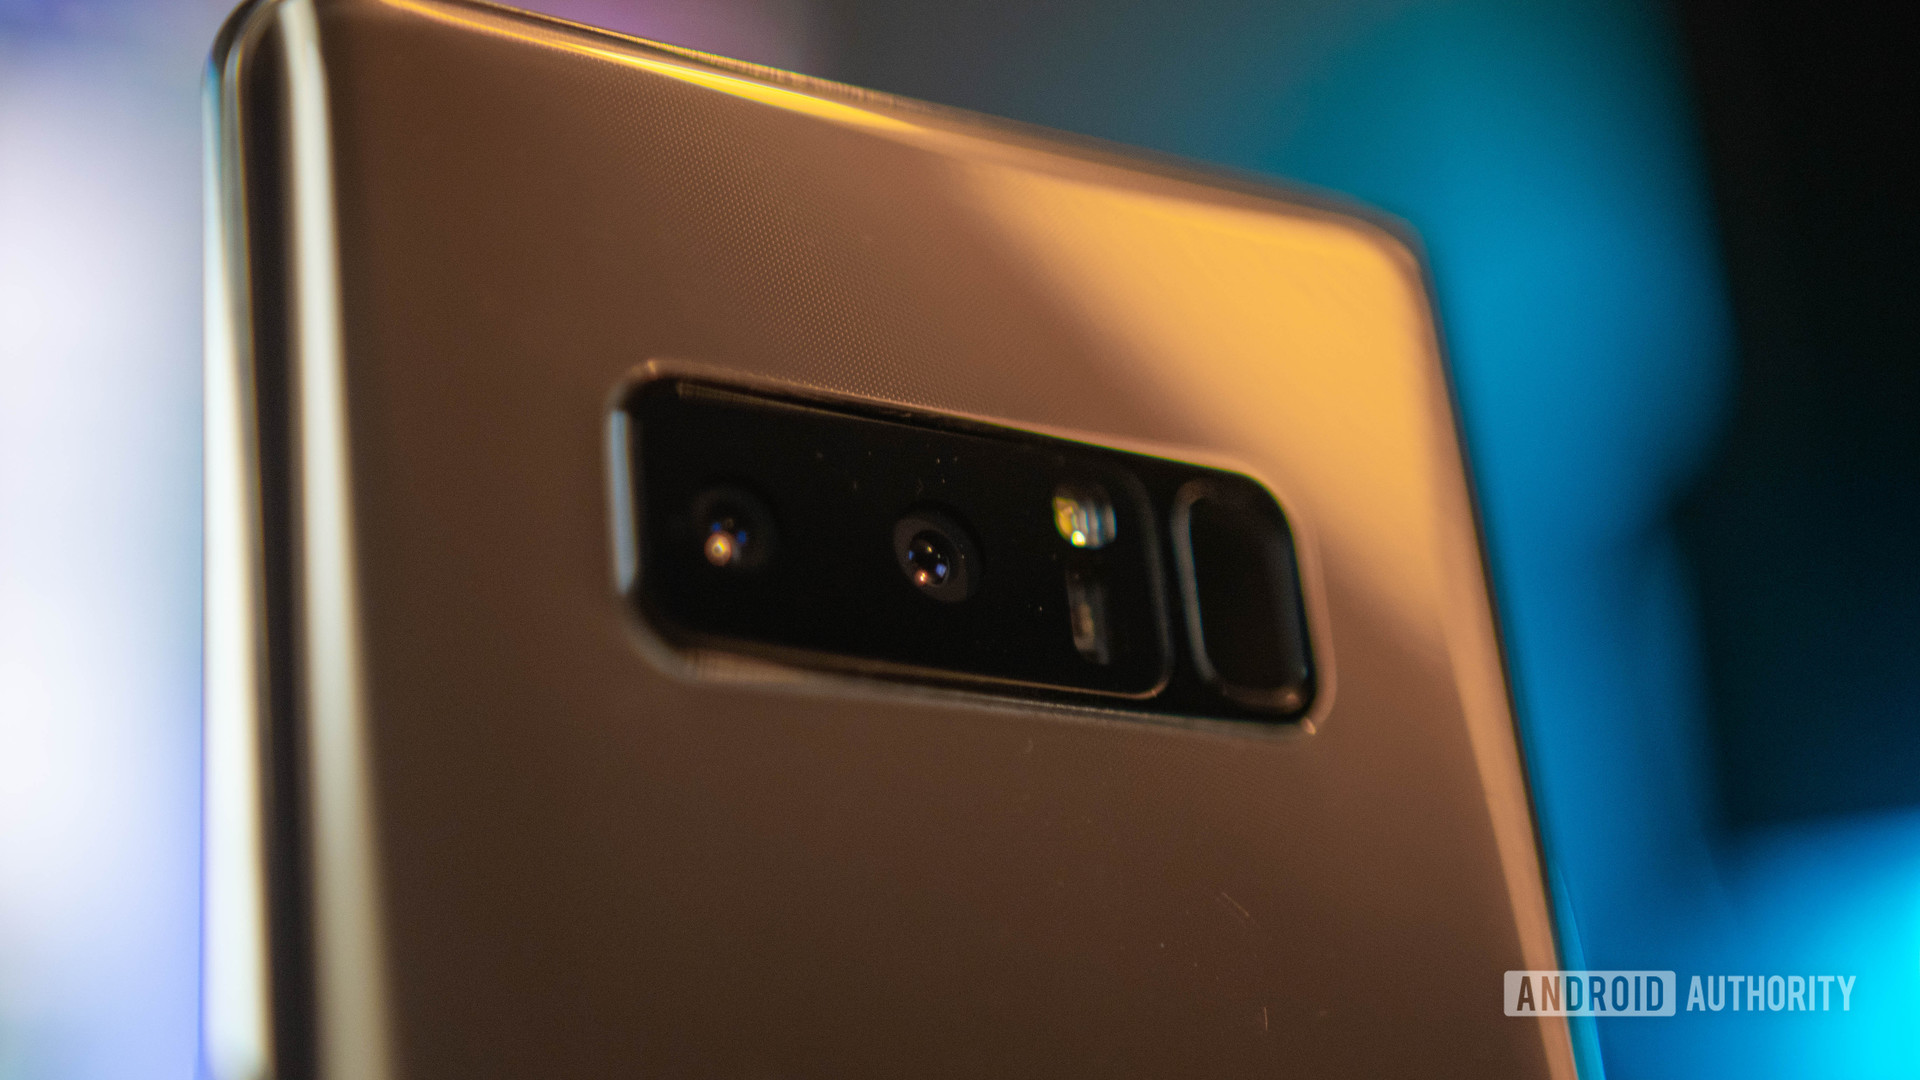 Samsung Galaxy Note 8 rear cameras gold color